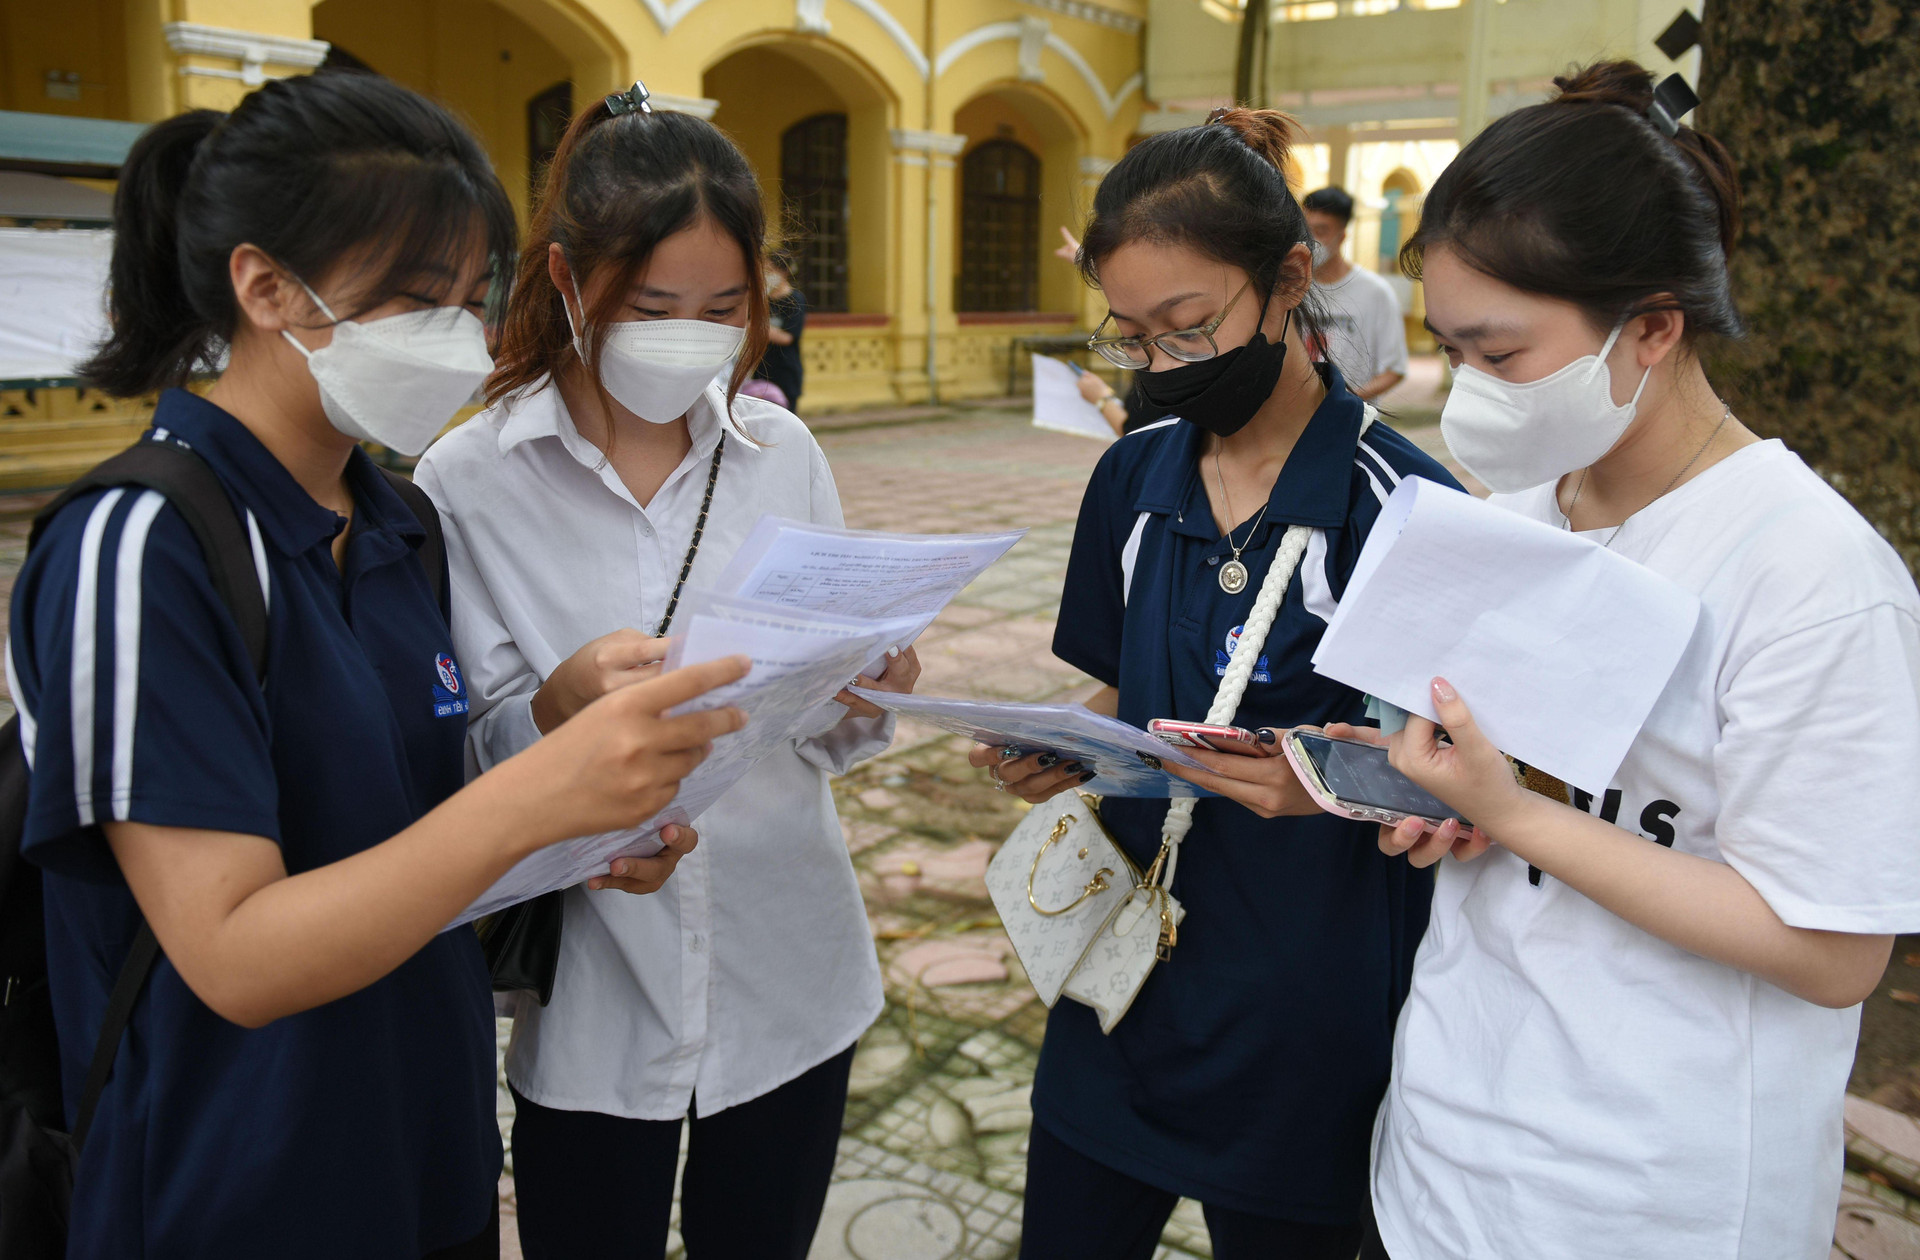  Danh sách các trường đại học khối C00 và điểm chuẩn ở Hà Nội